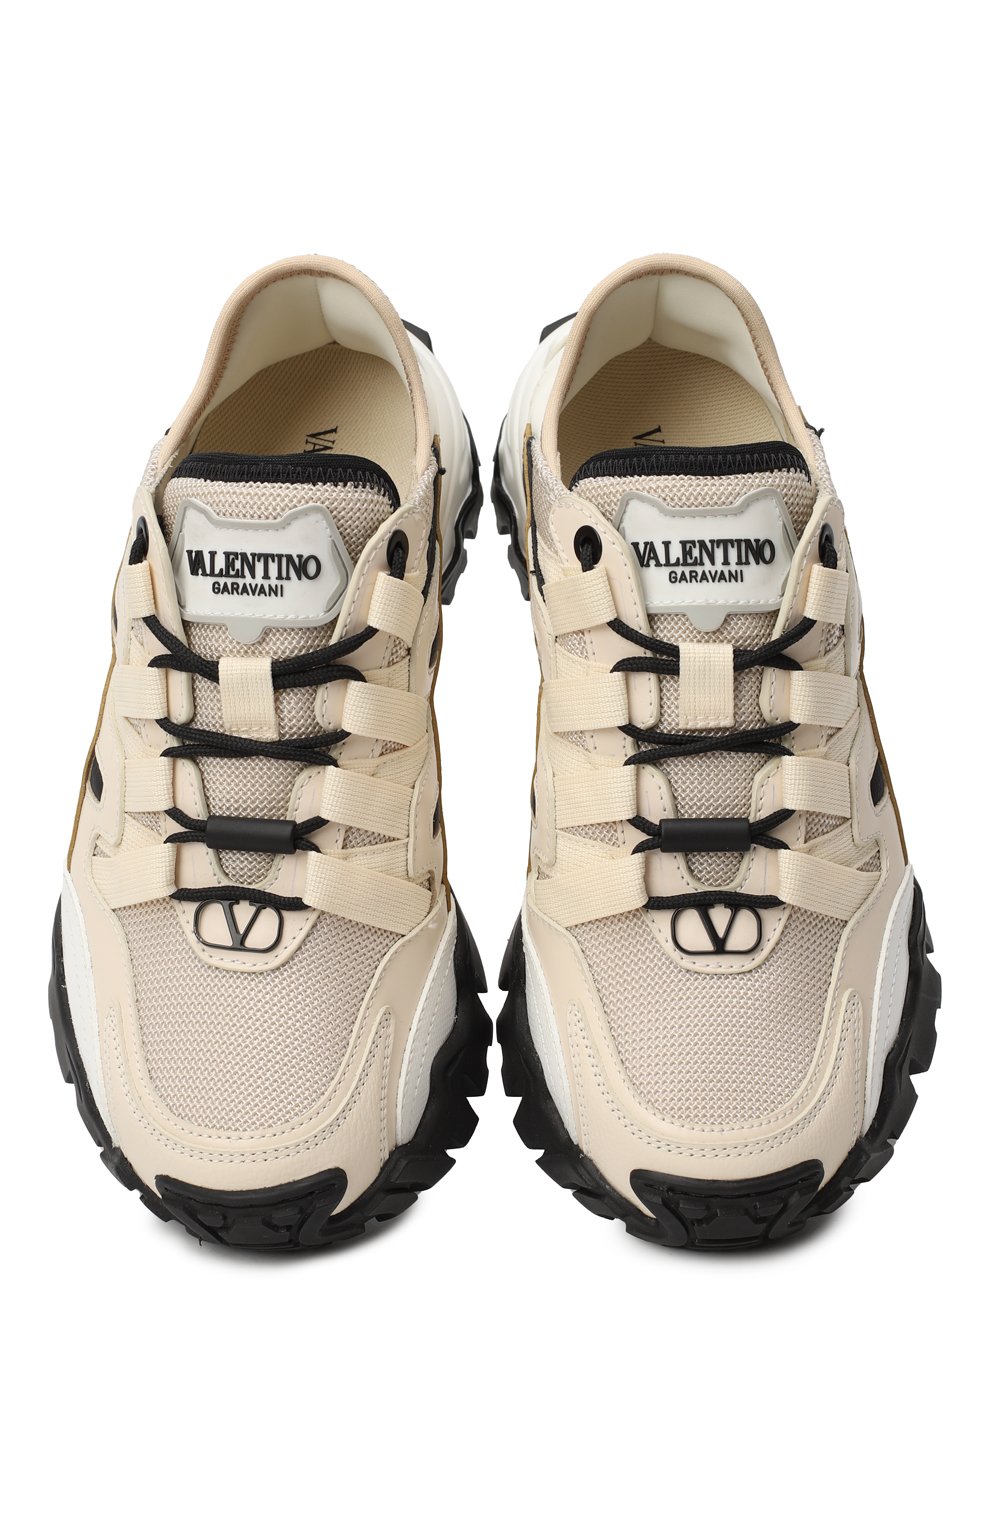 Текстильные кроссовки Climbers | Valentino | Бежевый - 2